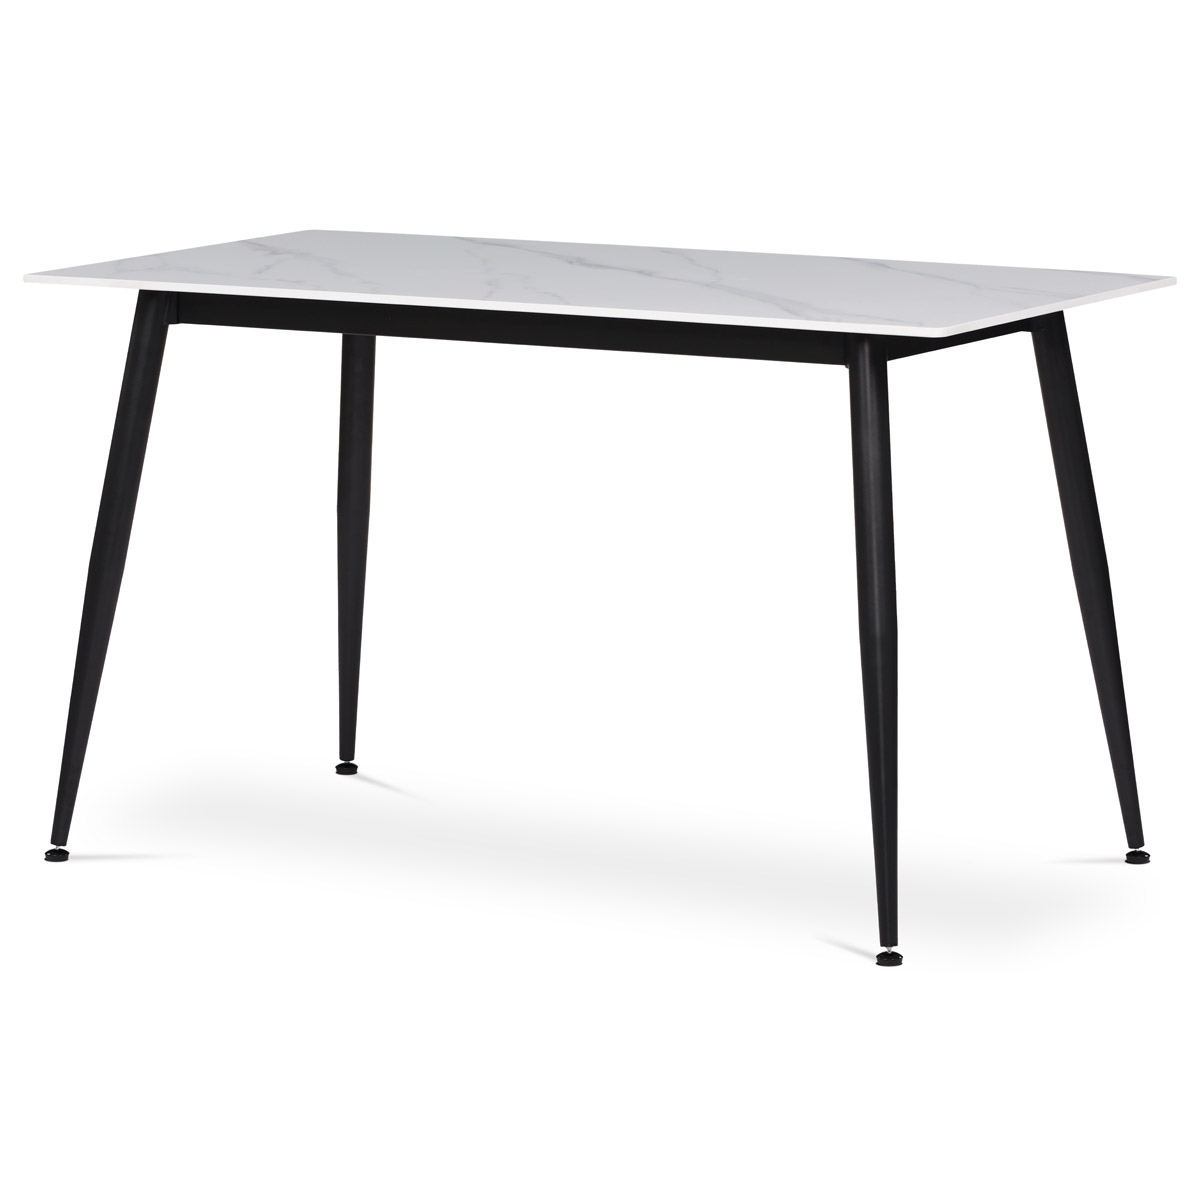 Jídelní stůl HT-403M WT, 130x70 cm, slinutý kámen, matný mramor, kov černý lak mat